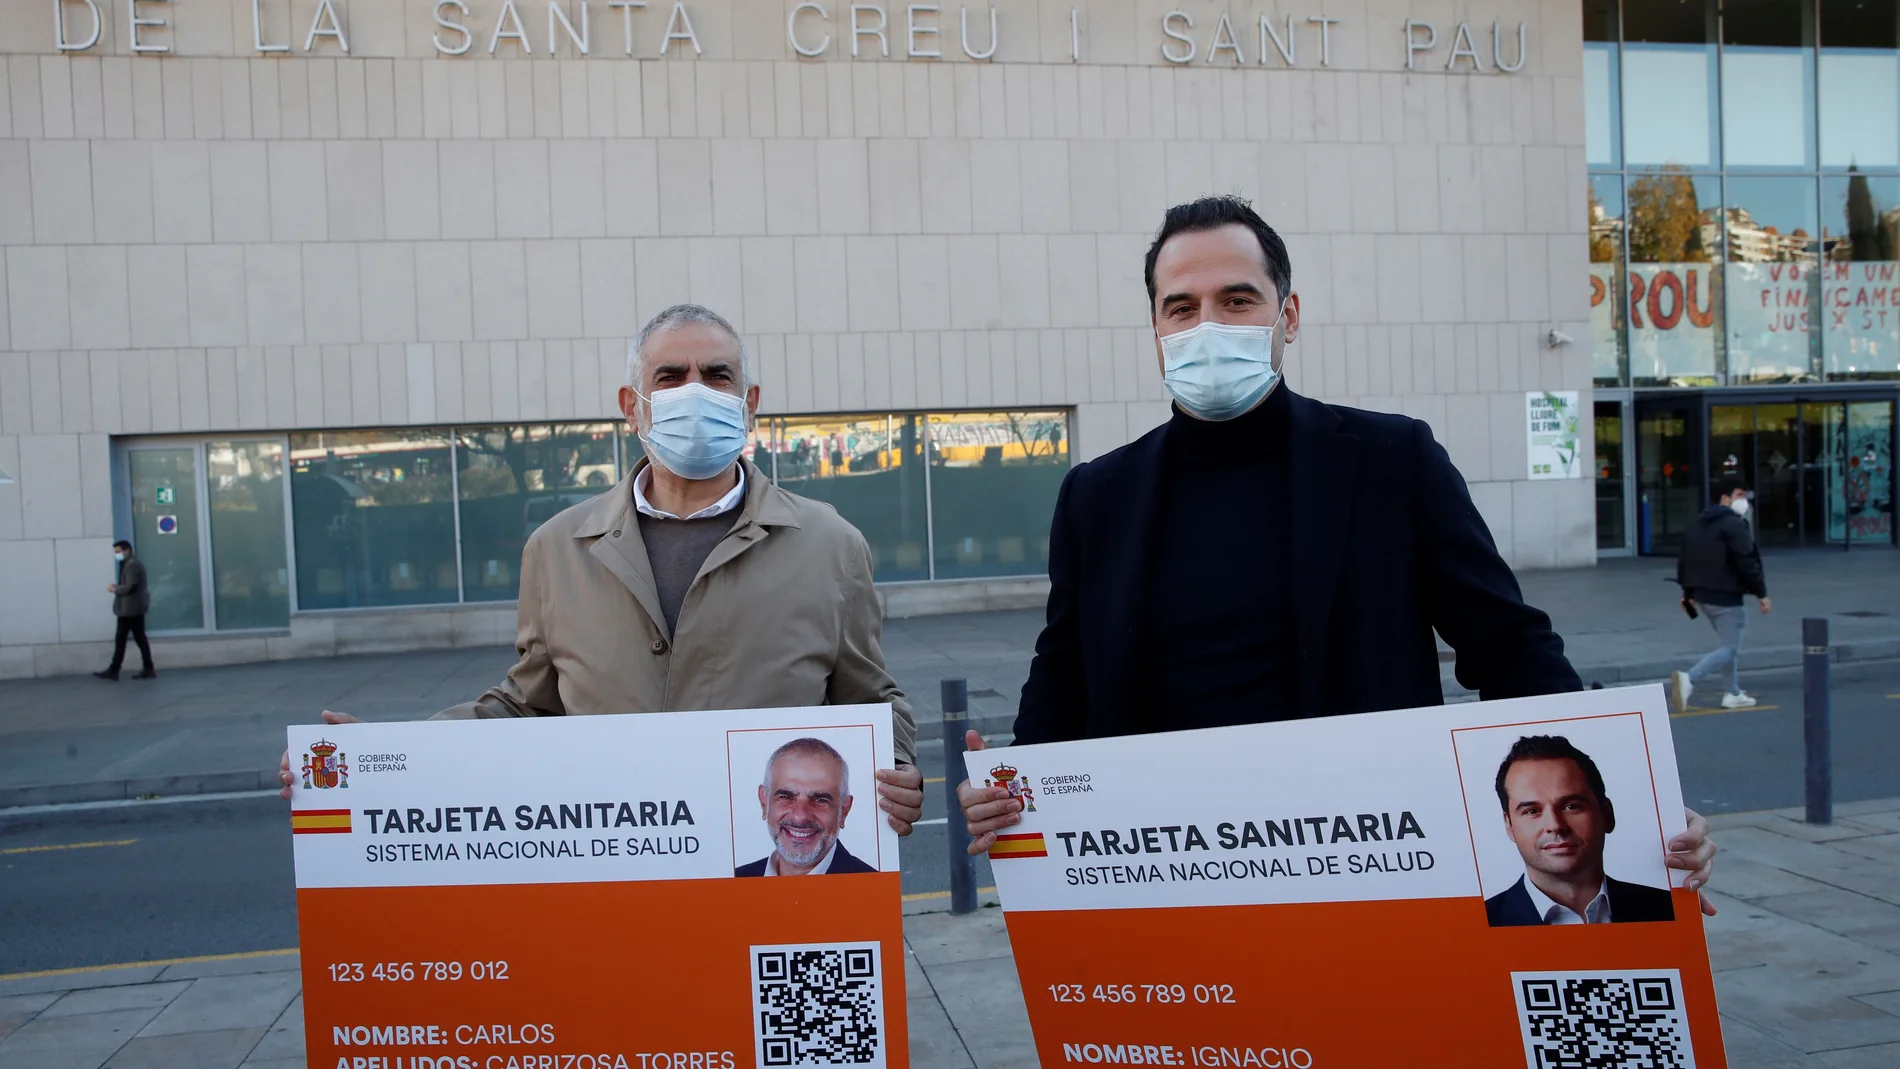 El presidente del grupo de Ciudadanos en el Parlament, Carlos Carrizosa (i) y el vicepresidente de la Comunidad de Madrid, Ignacio Aguado (d) con una representación de la tarjeta sanitaria tras la rueda de prensa frente al Hospital de Sant Pau en Barcelona este sábado